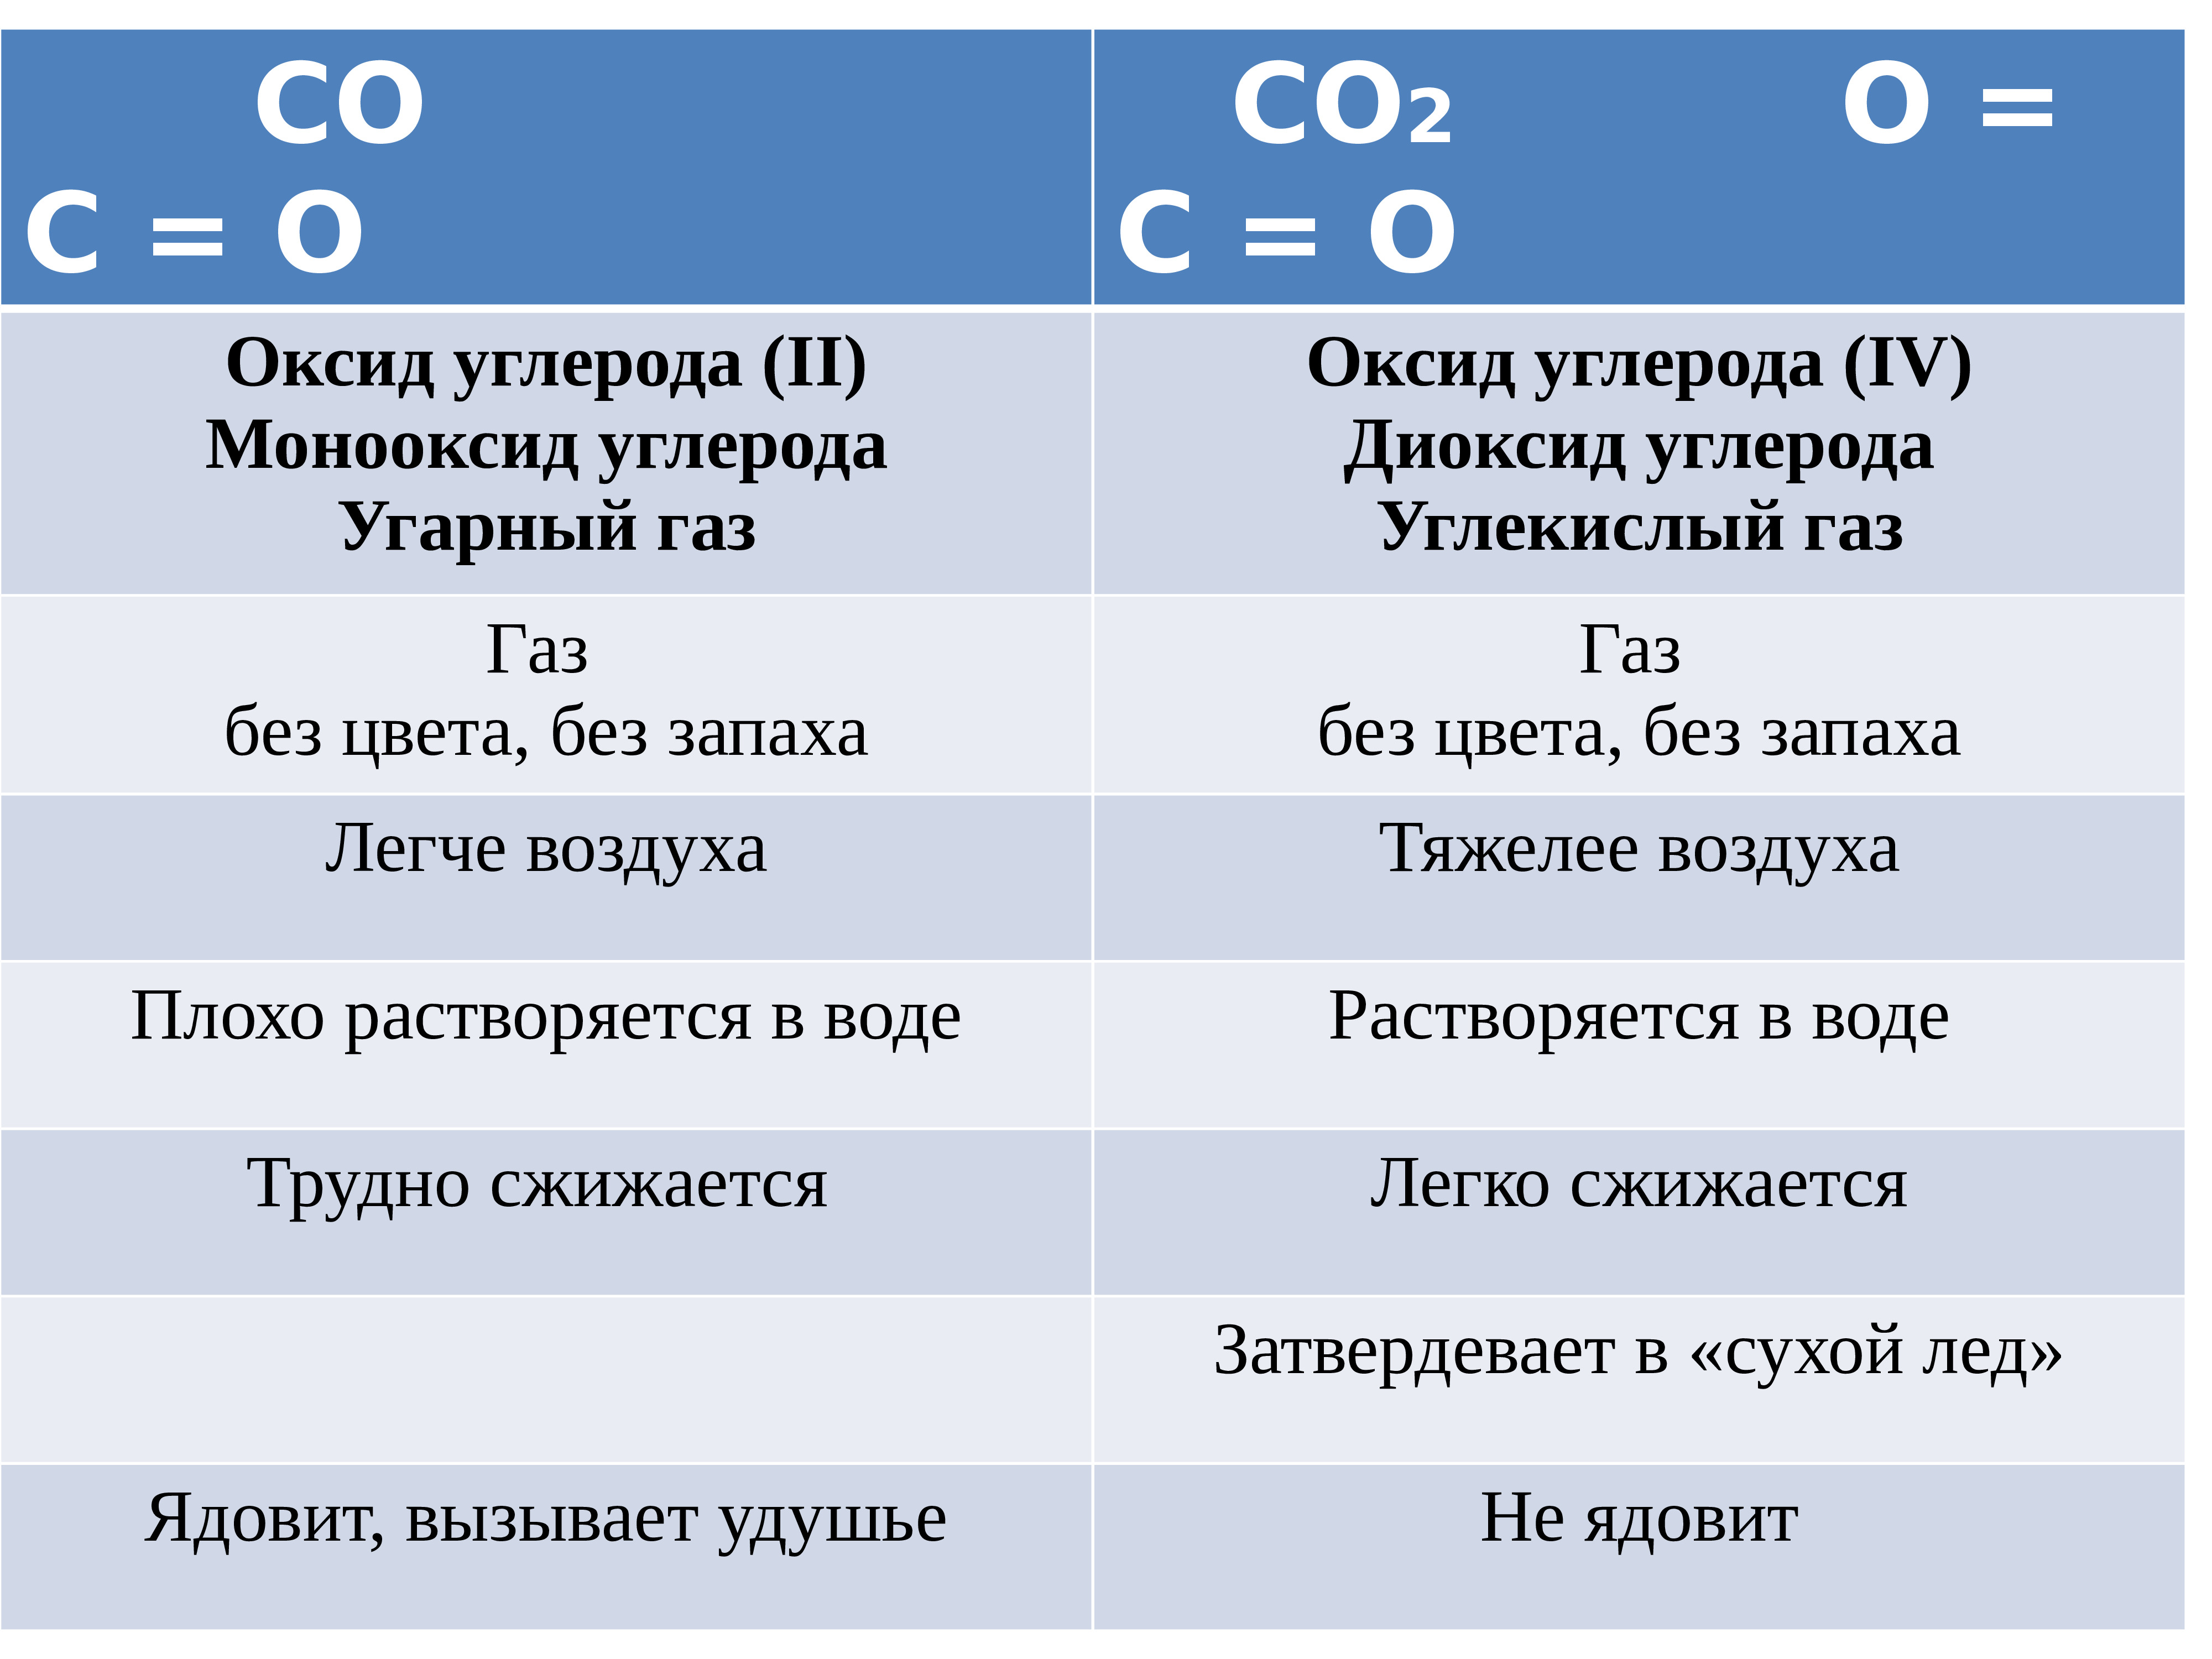 Углекислый газ тяжелый или легкий. Формулы соединений углерода. Оксид углерода 2 легче или тяжелее воздуха. Uglerod oksid ugleroda. Таблица угарного газа.